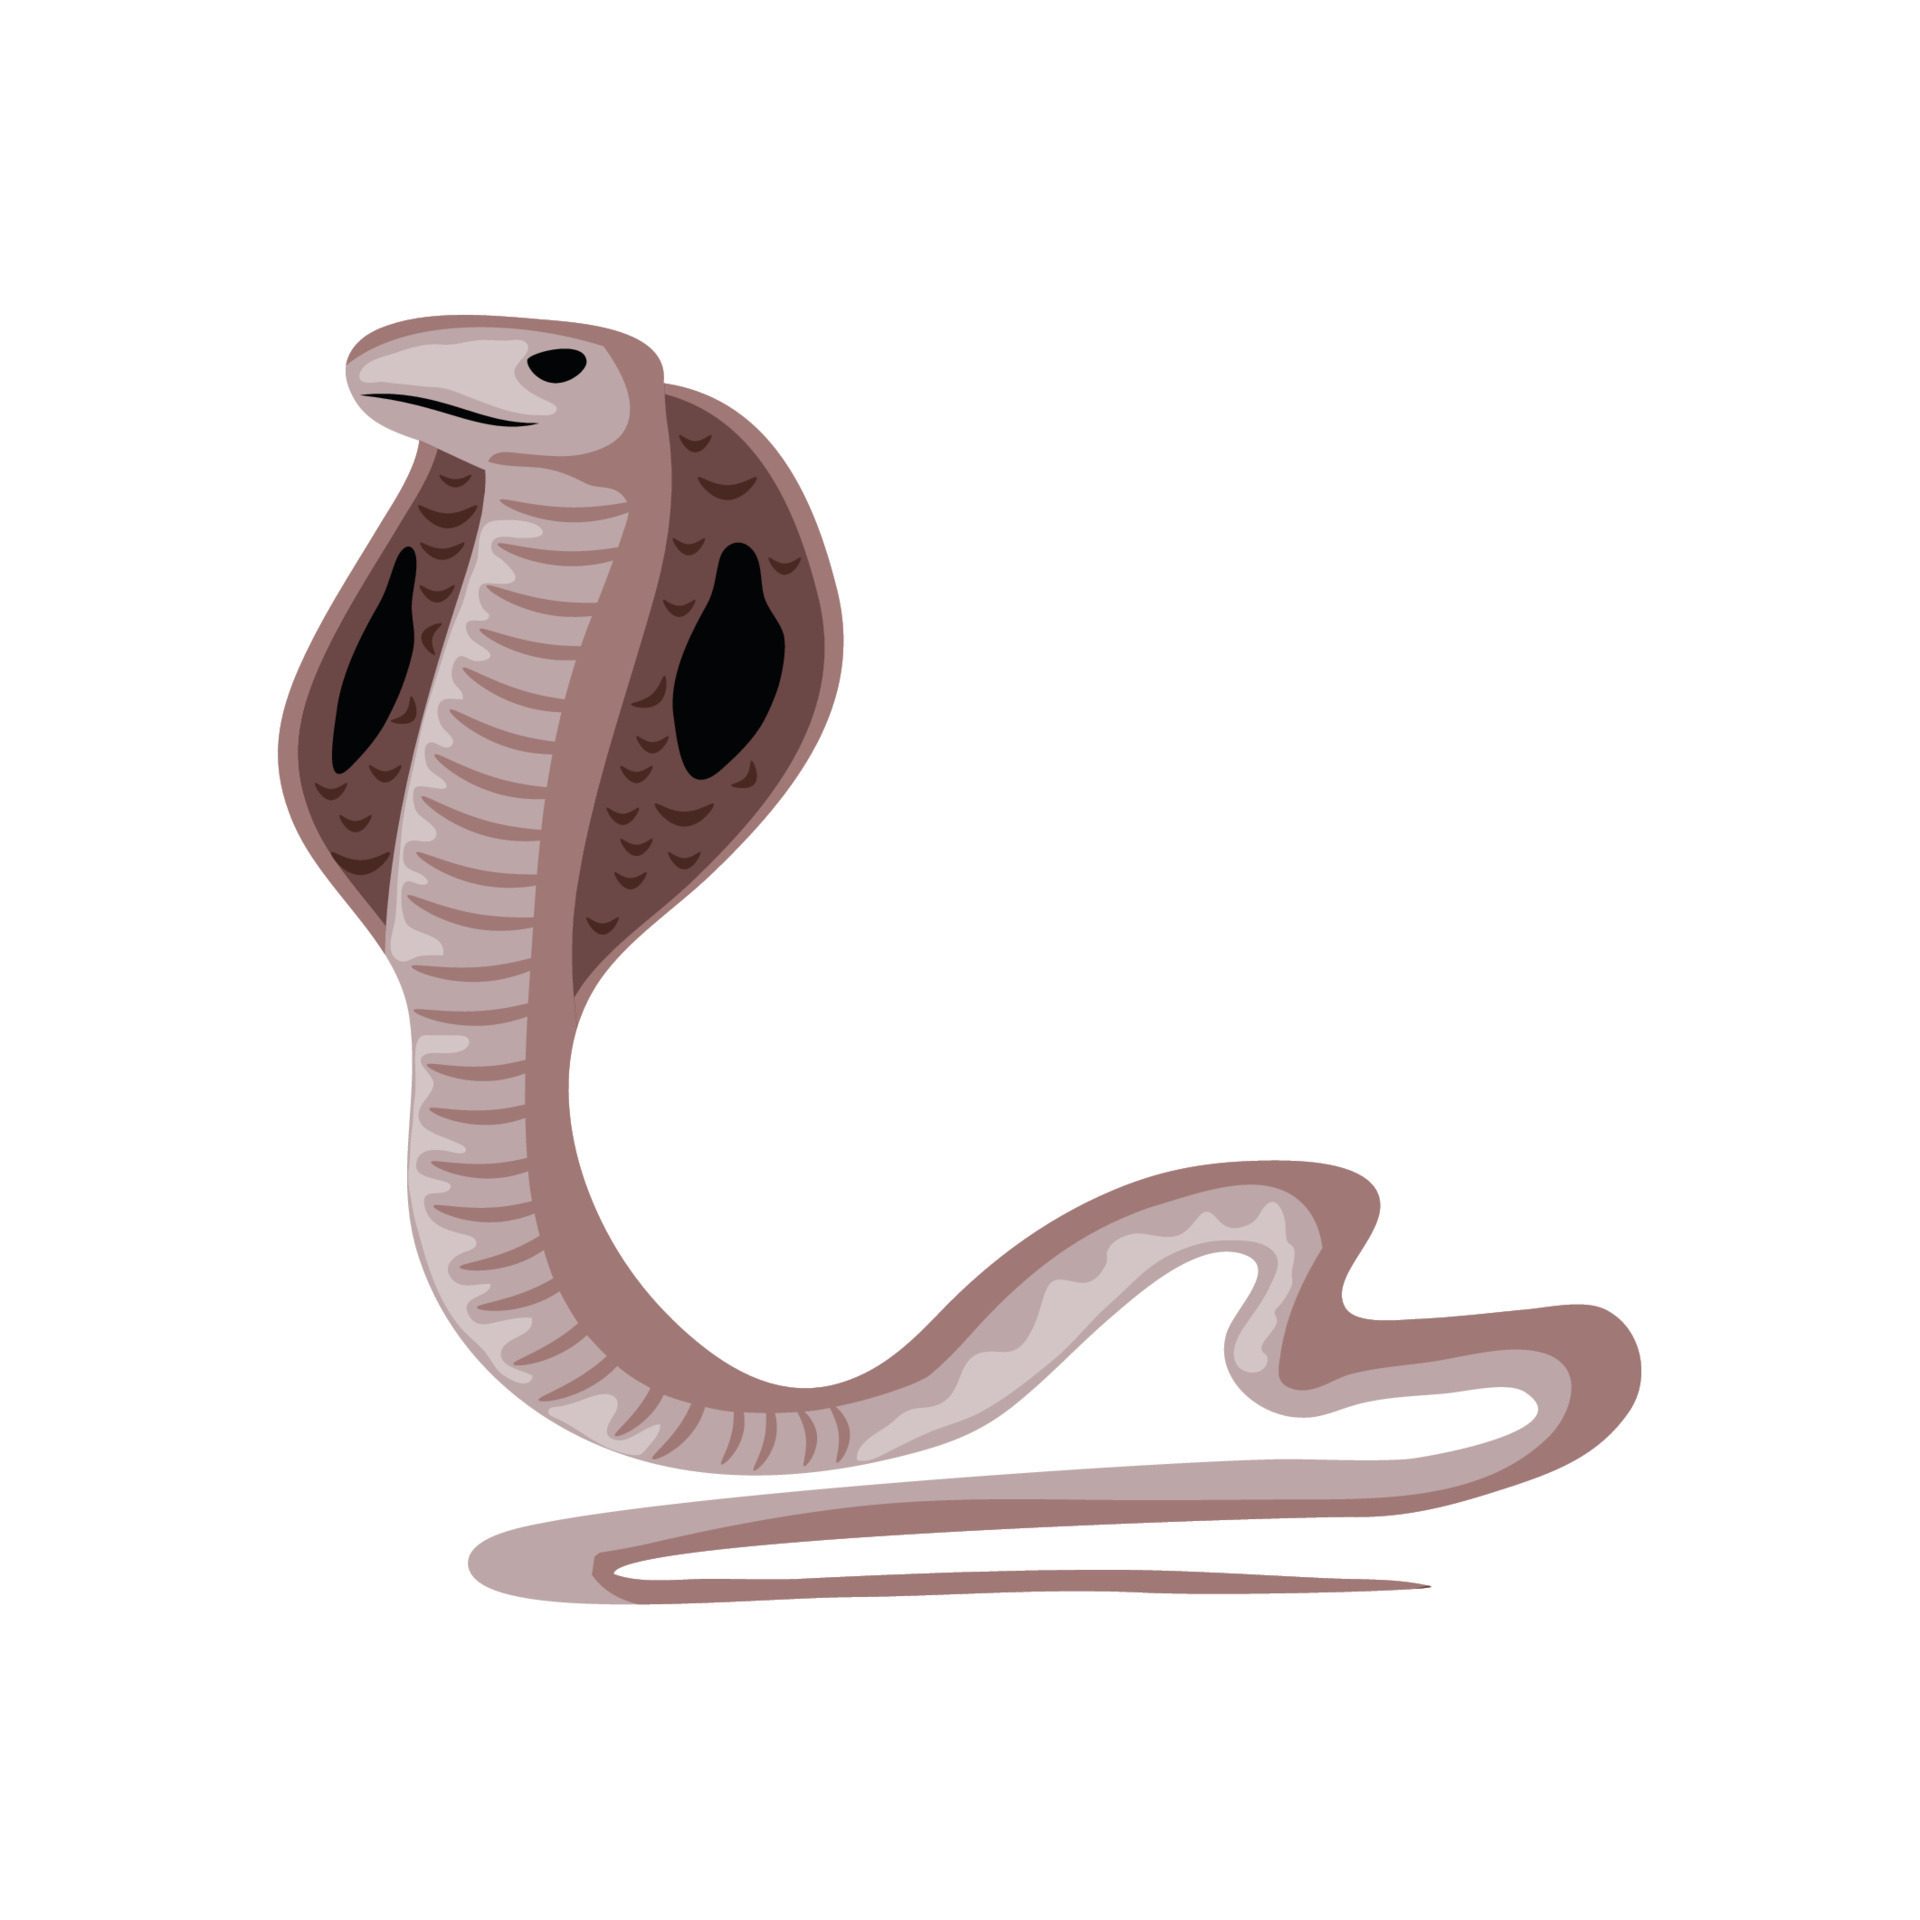 green king cobra snake 8769502 Vector Art at Vecteezy